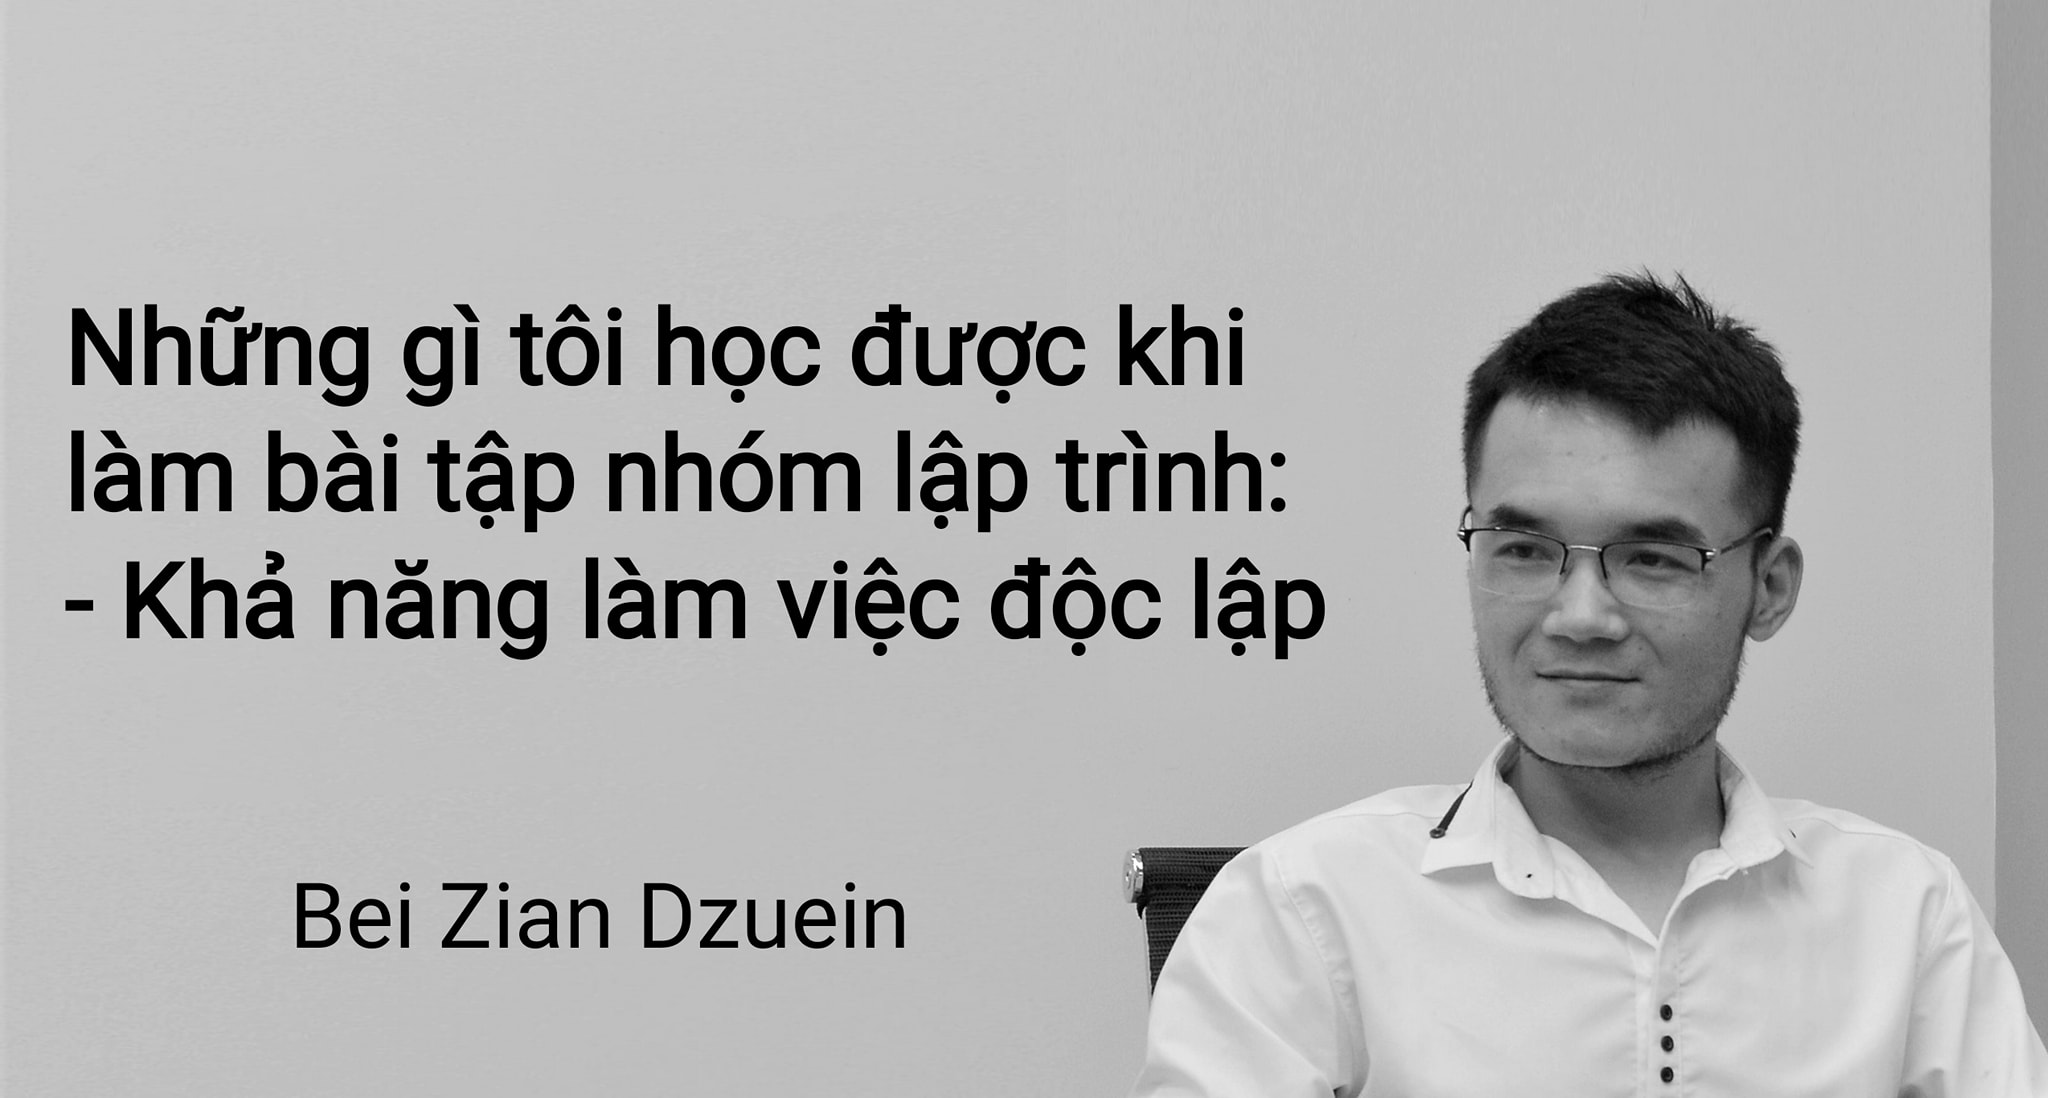 Bei Zian Dzuein